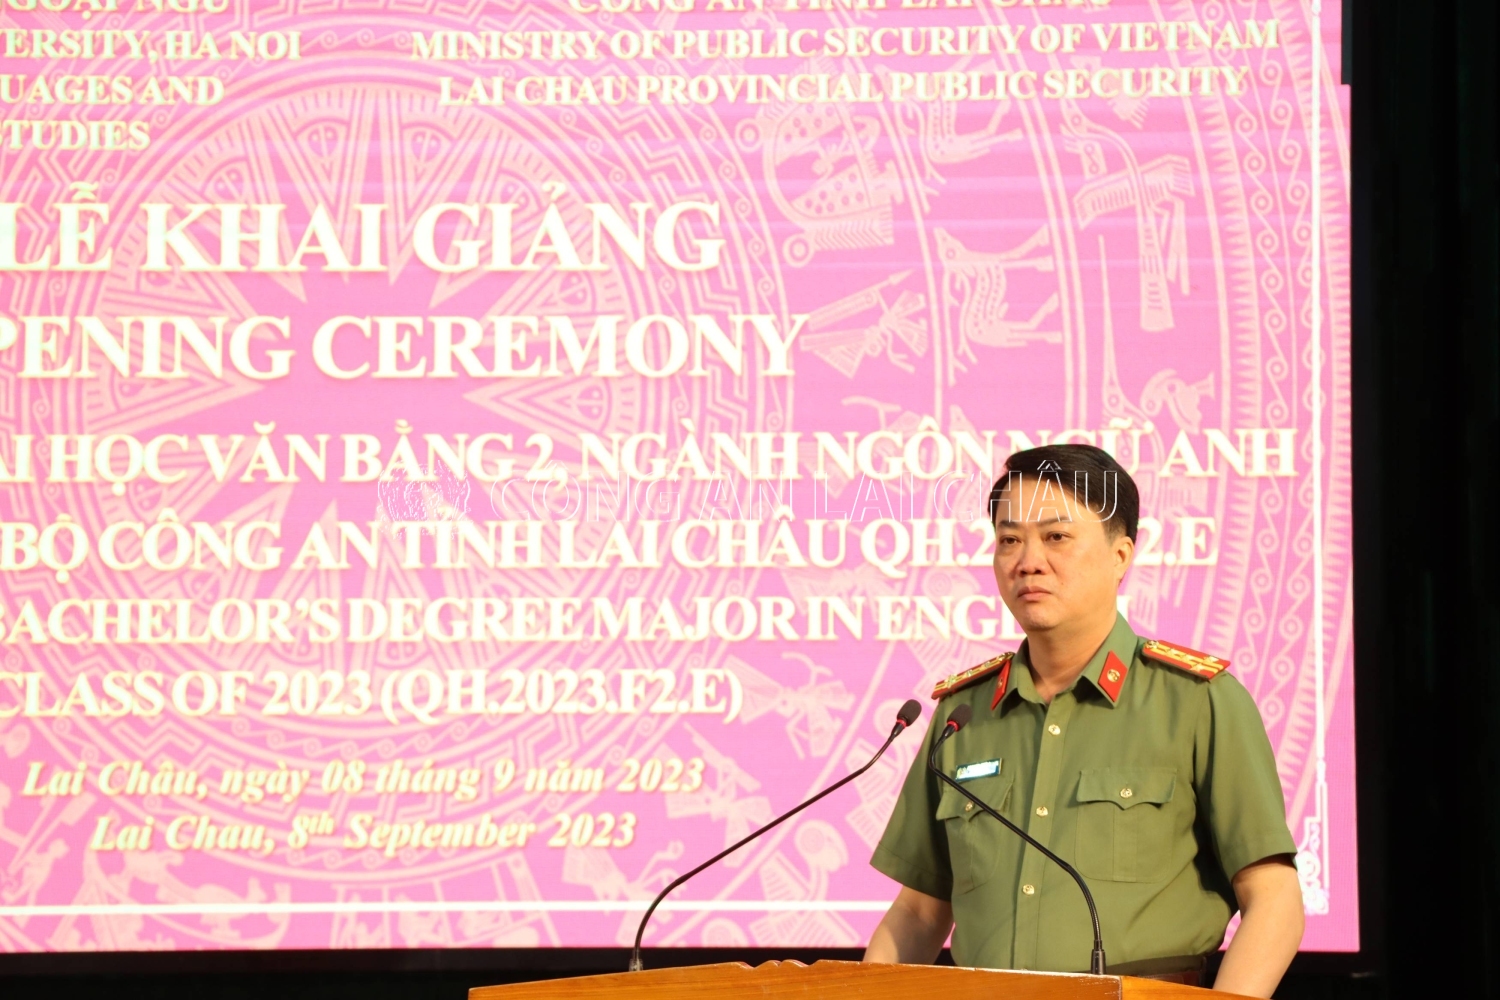 Đại tá Nguyễn Viết Giang - Giám đốc Công an tỉnh phát biểu chỉ đạo tại buổi lễ khai giảng